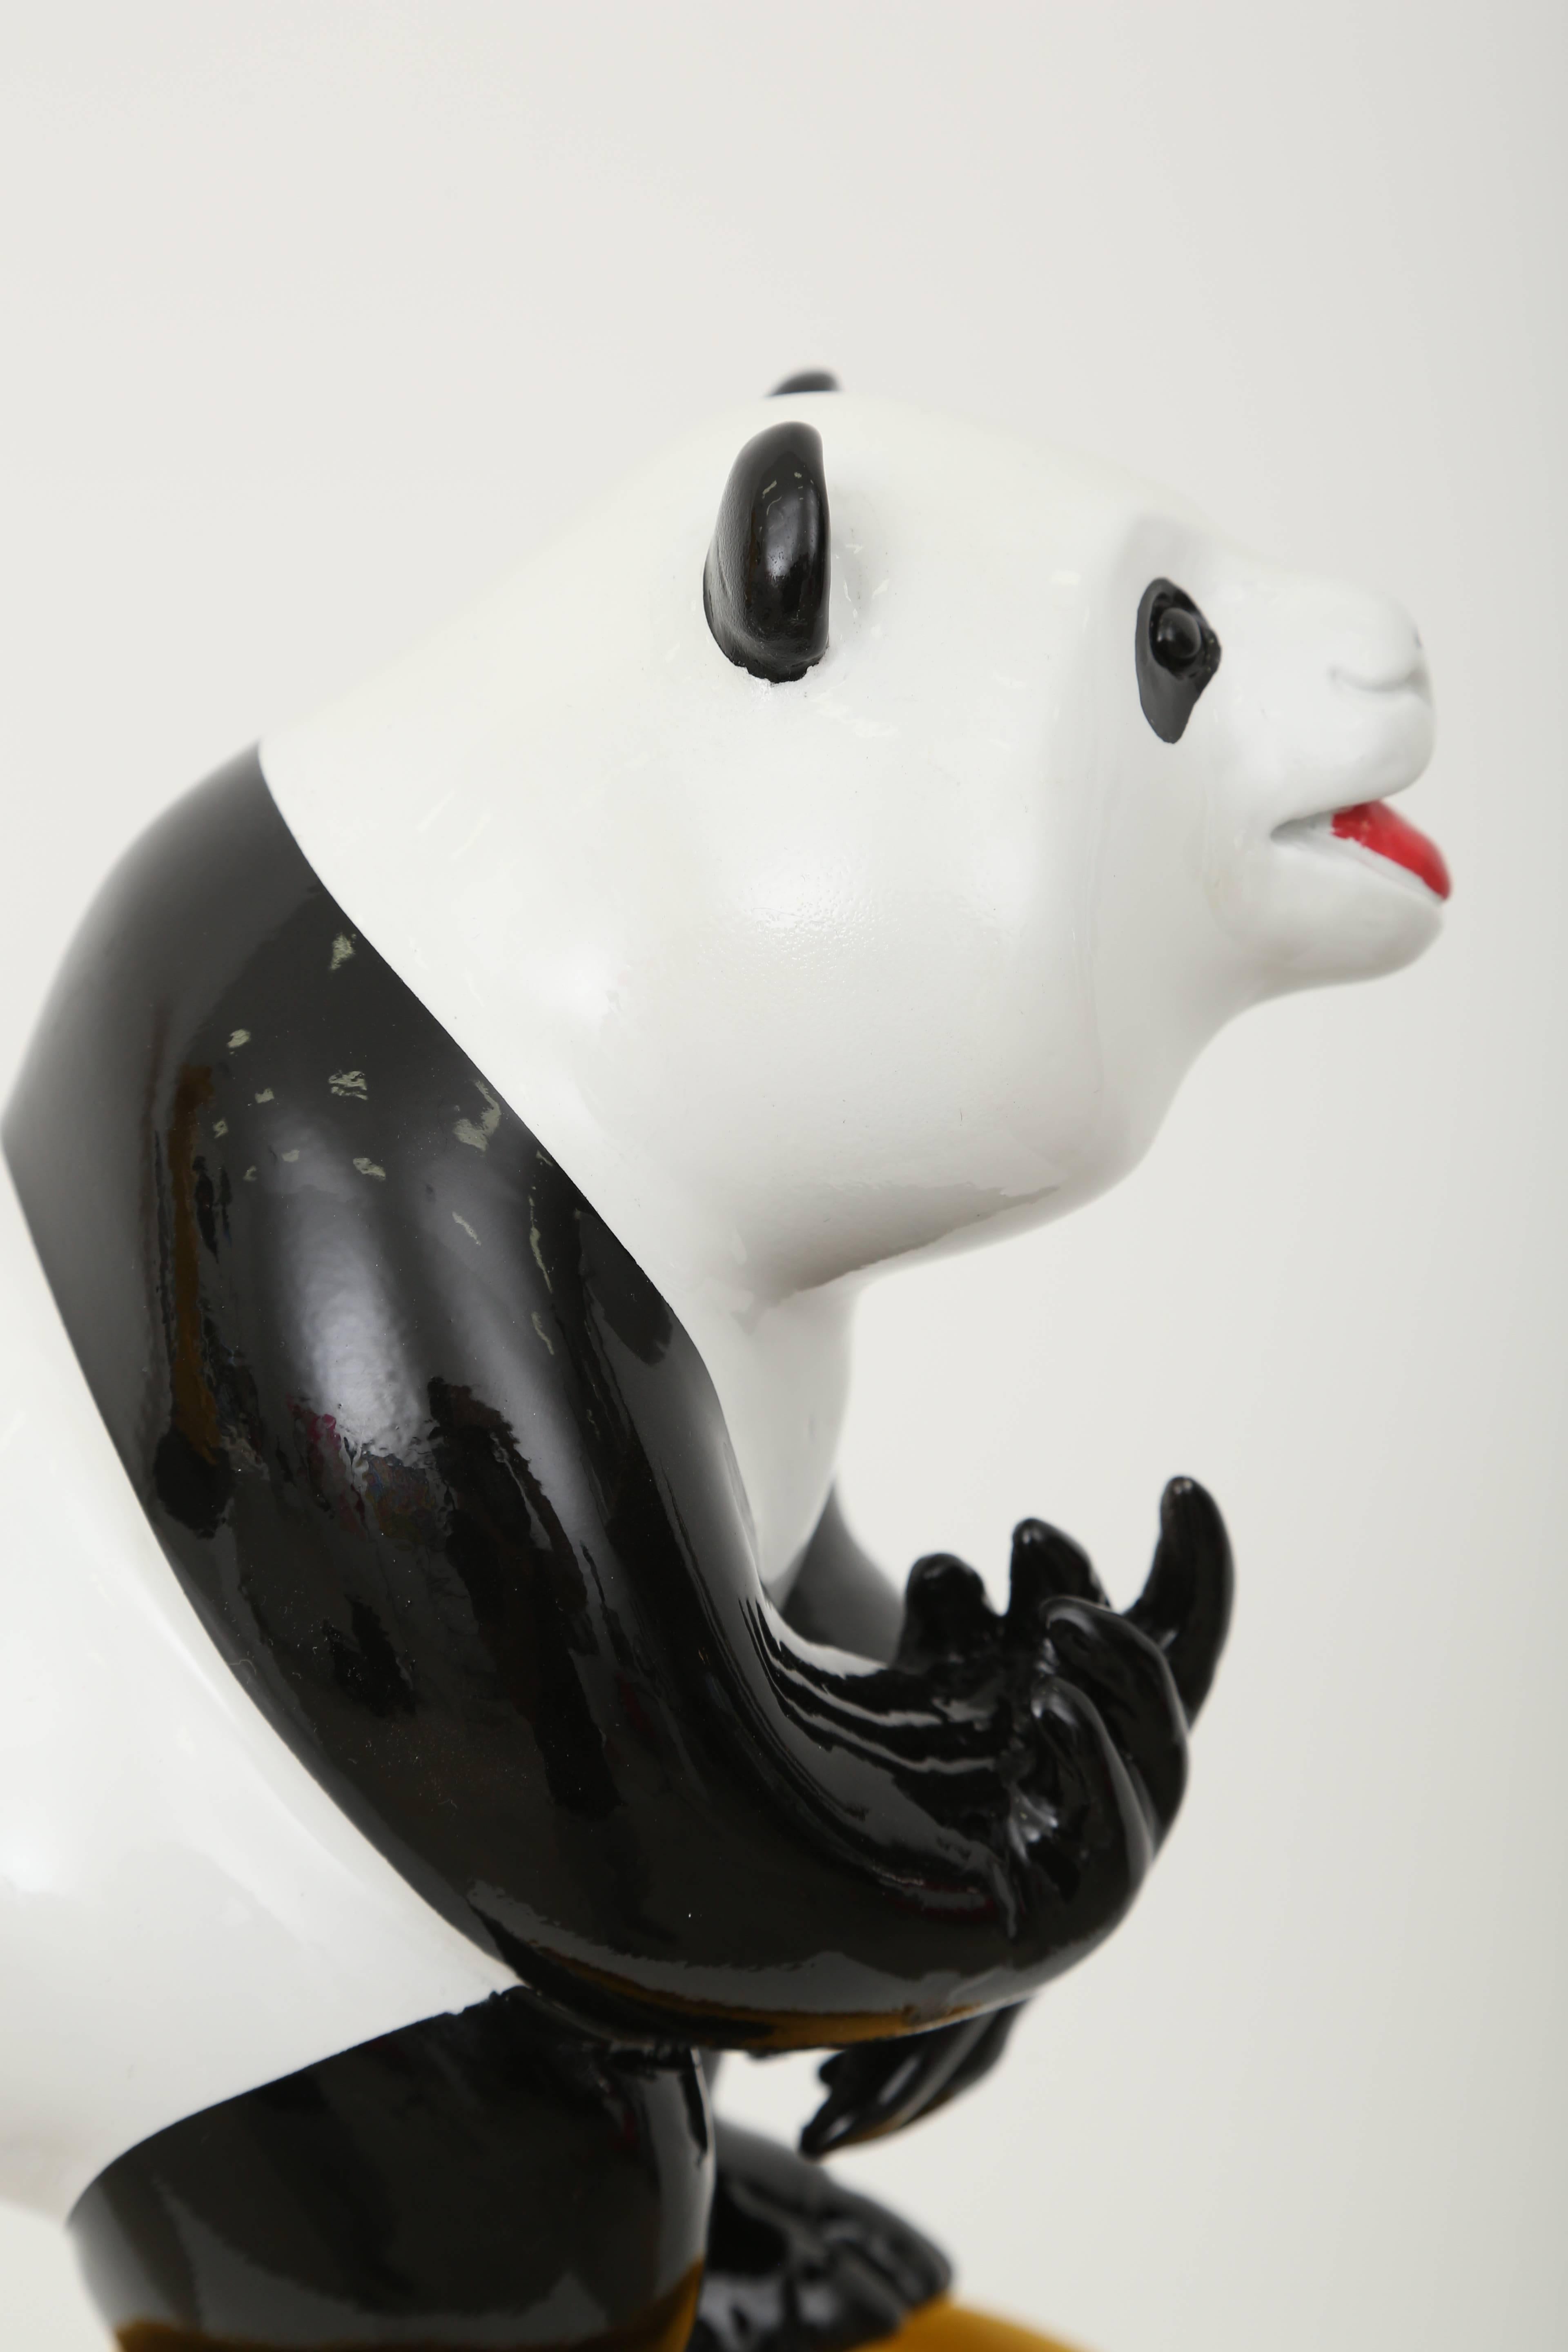 Fuck Panda - Sculpture by Patrick Schumacher